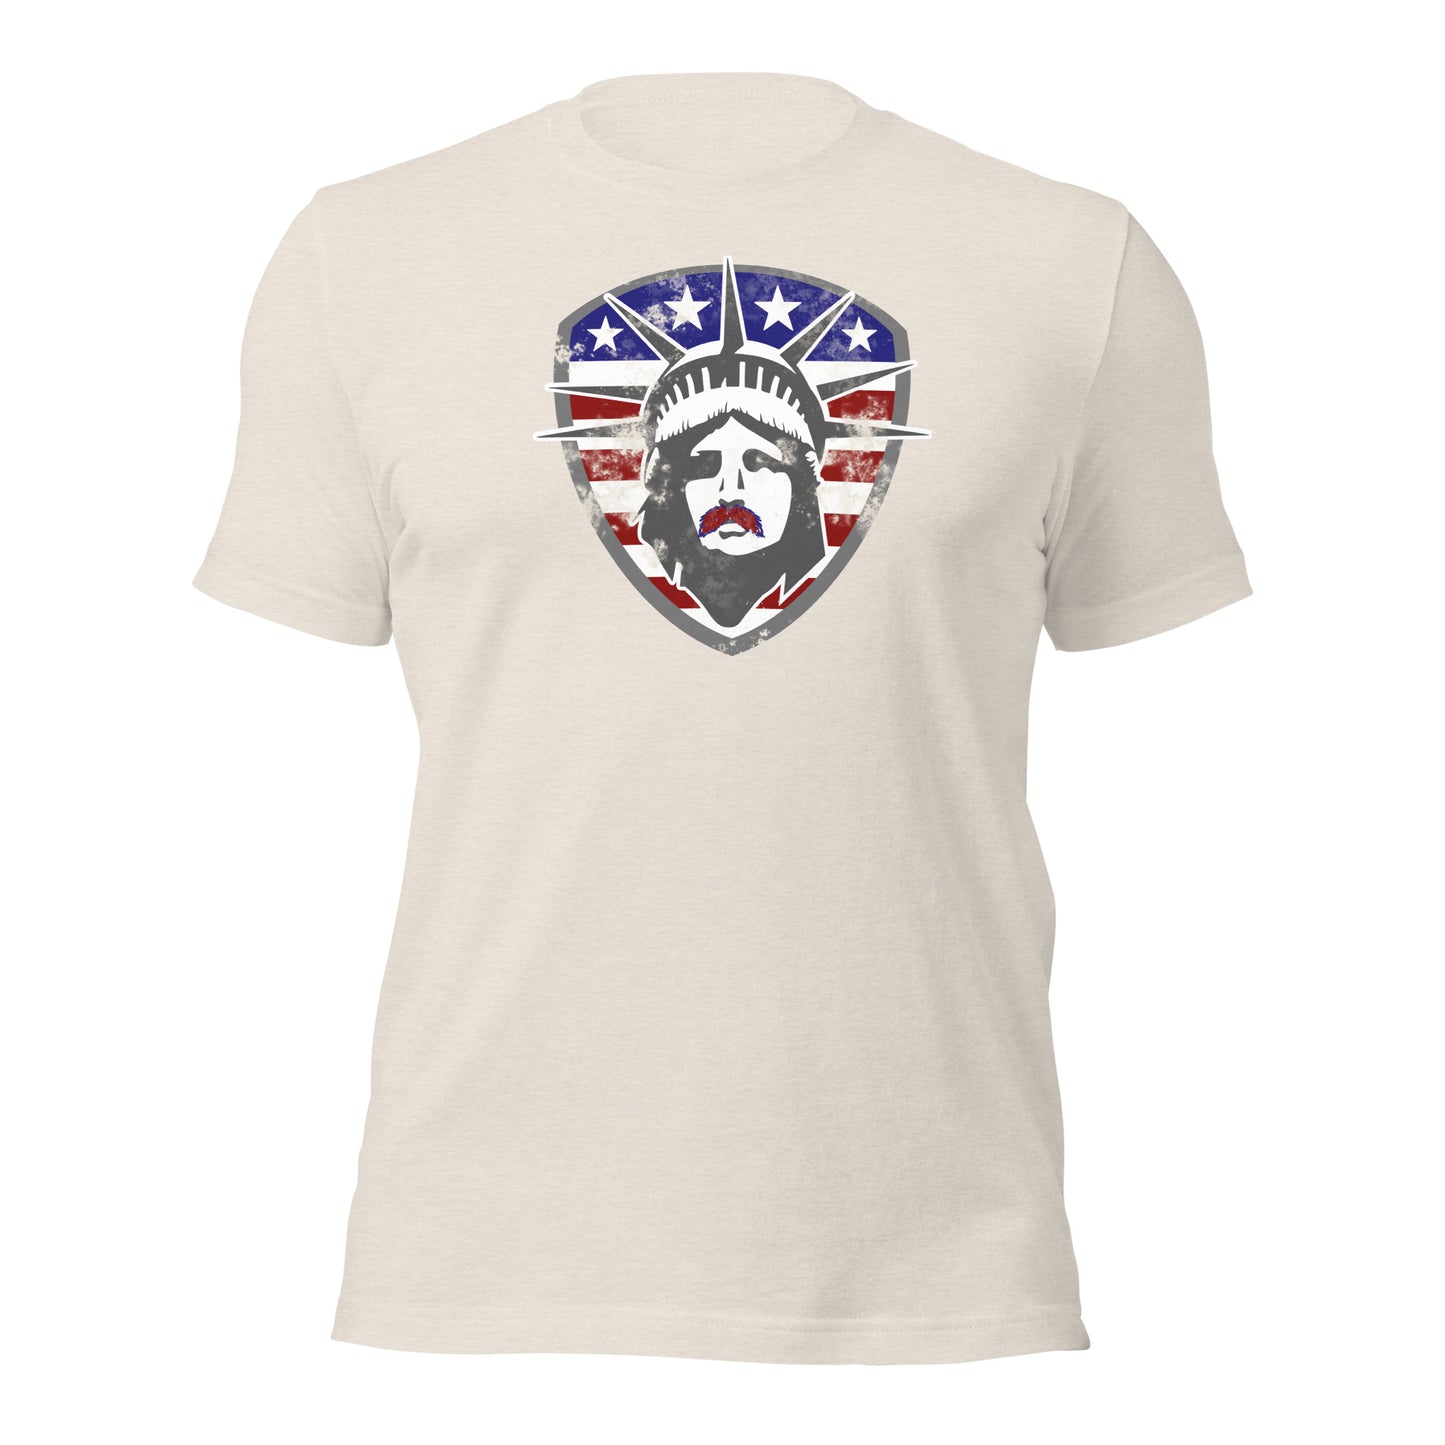 Lady Liberty Stache T-Shirt